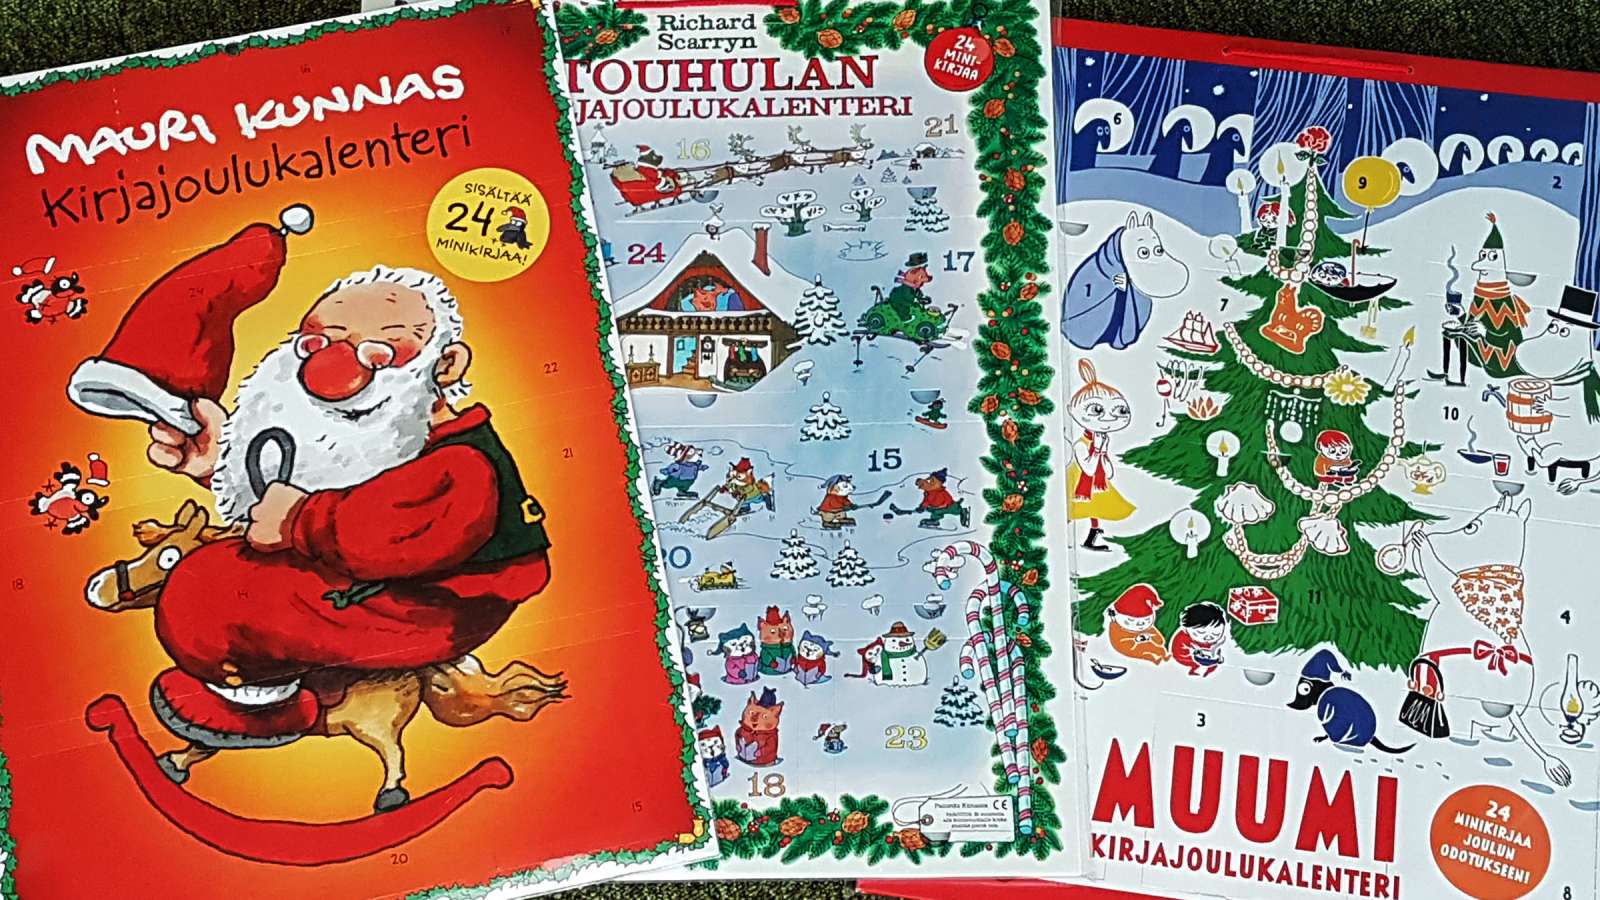 Mauri Kunnaksen, Touhoulan ja Muumien joulukalenteri.